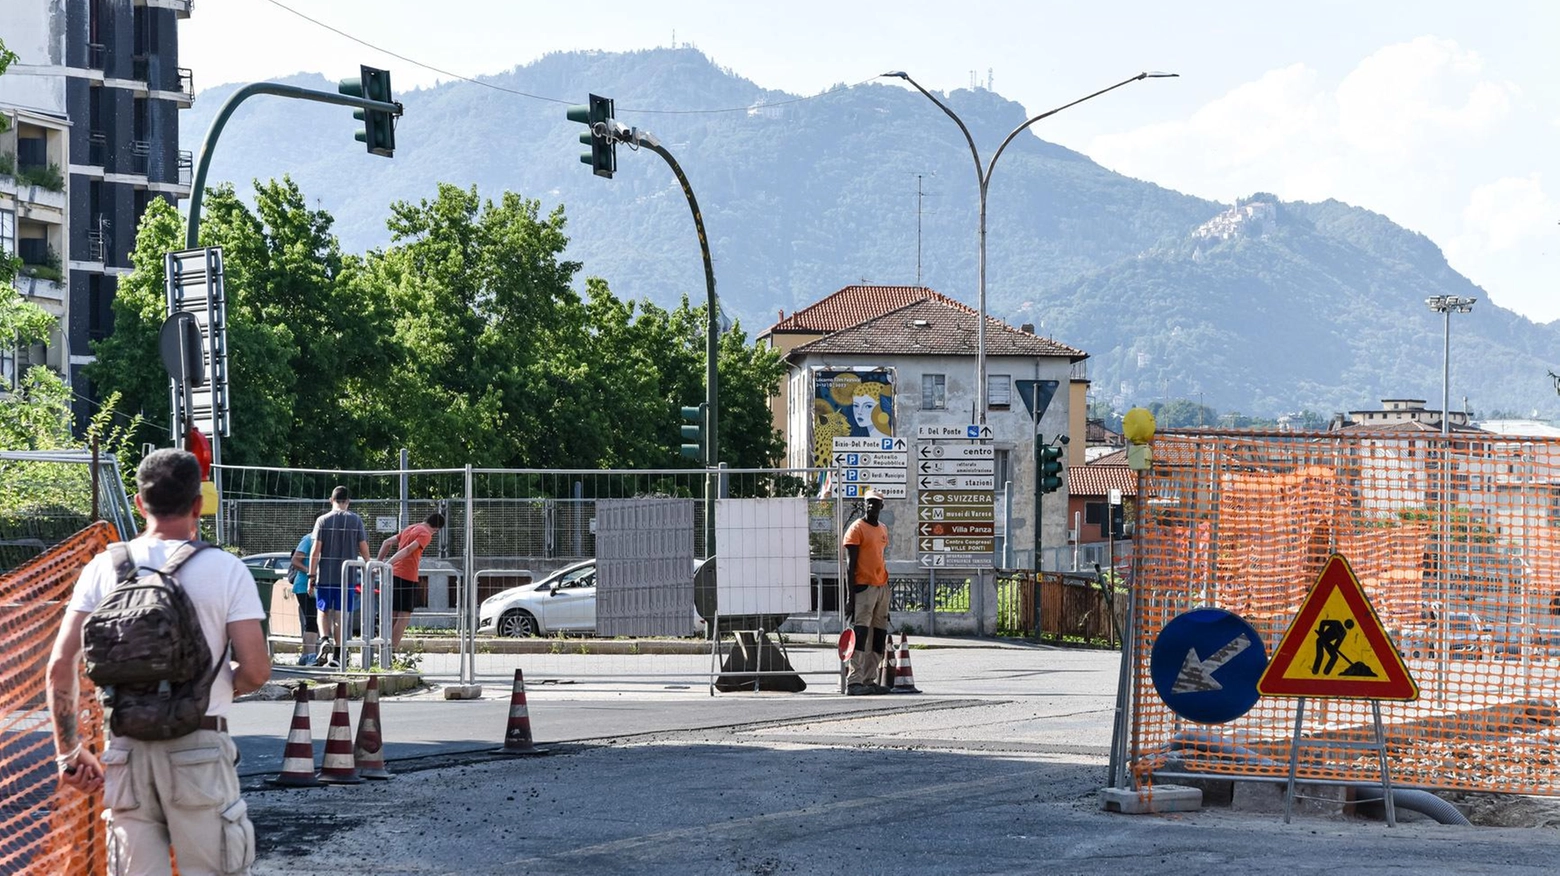 

Chiude di nuovo il raccordo con l'A8 a Varese: "L'assessore si dimetta"